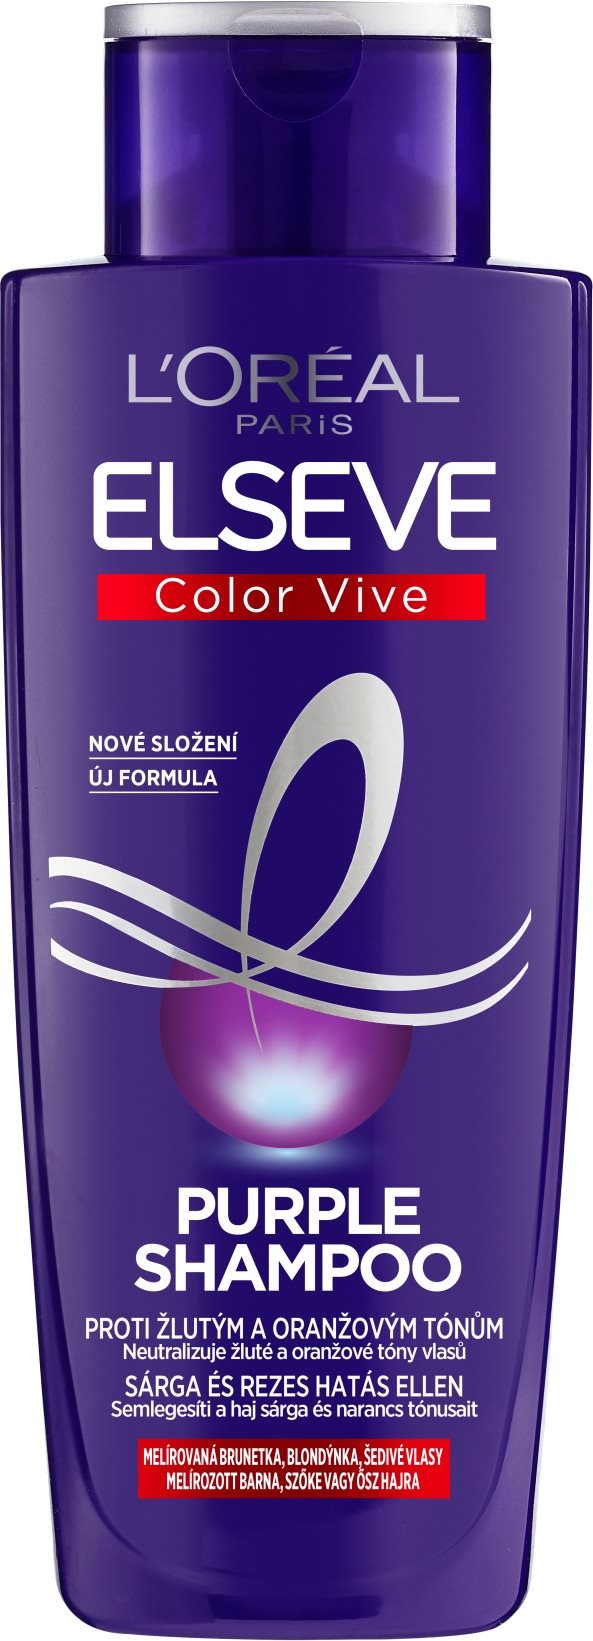 Sampon ősz hajra L'ORÉAL PARIS Elseve Color Vive Purple Shampoo 200 ml